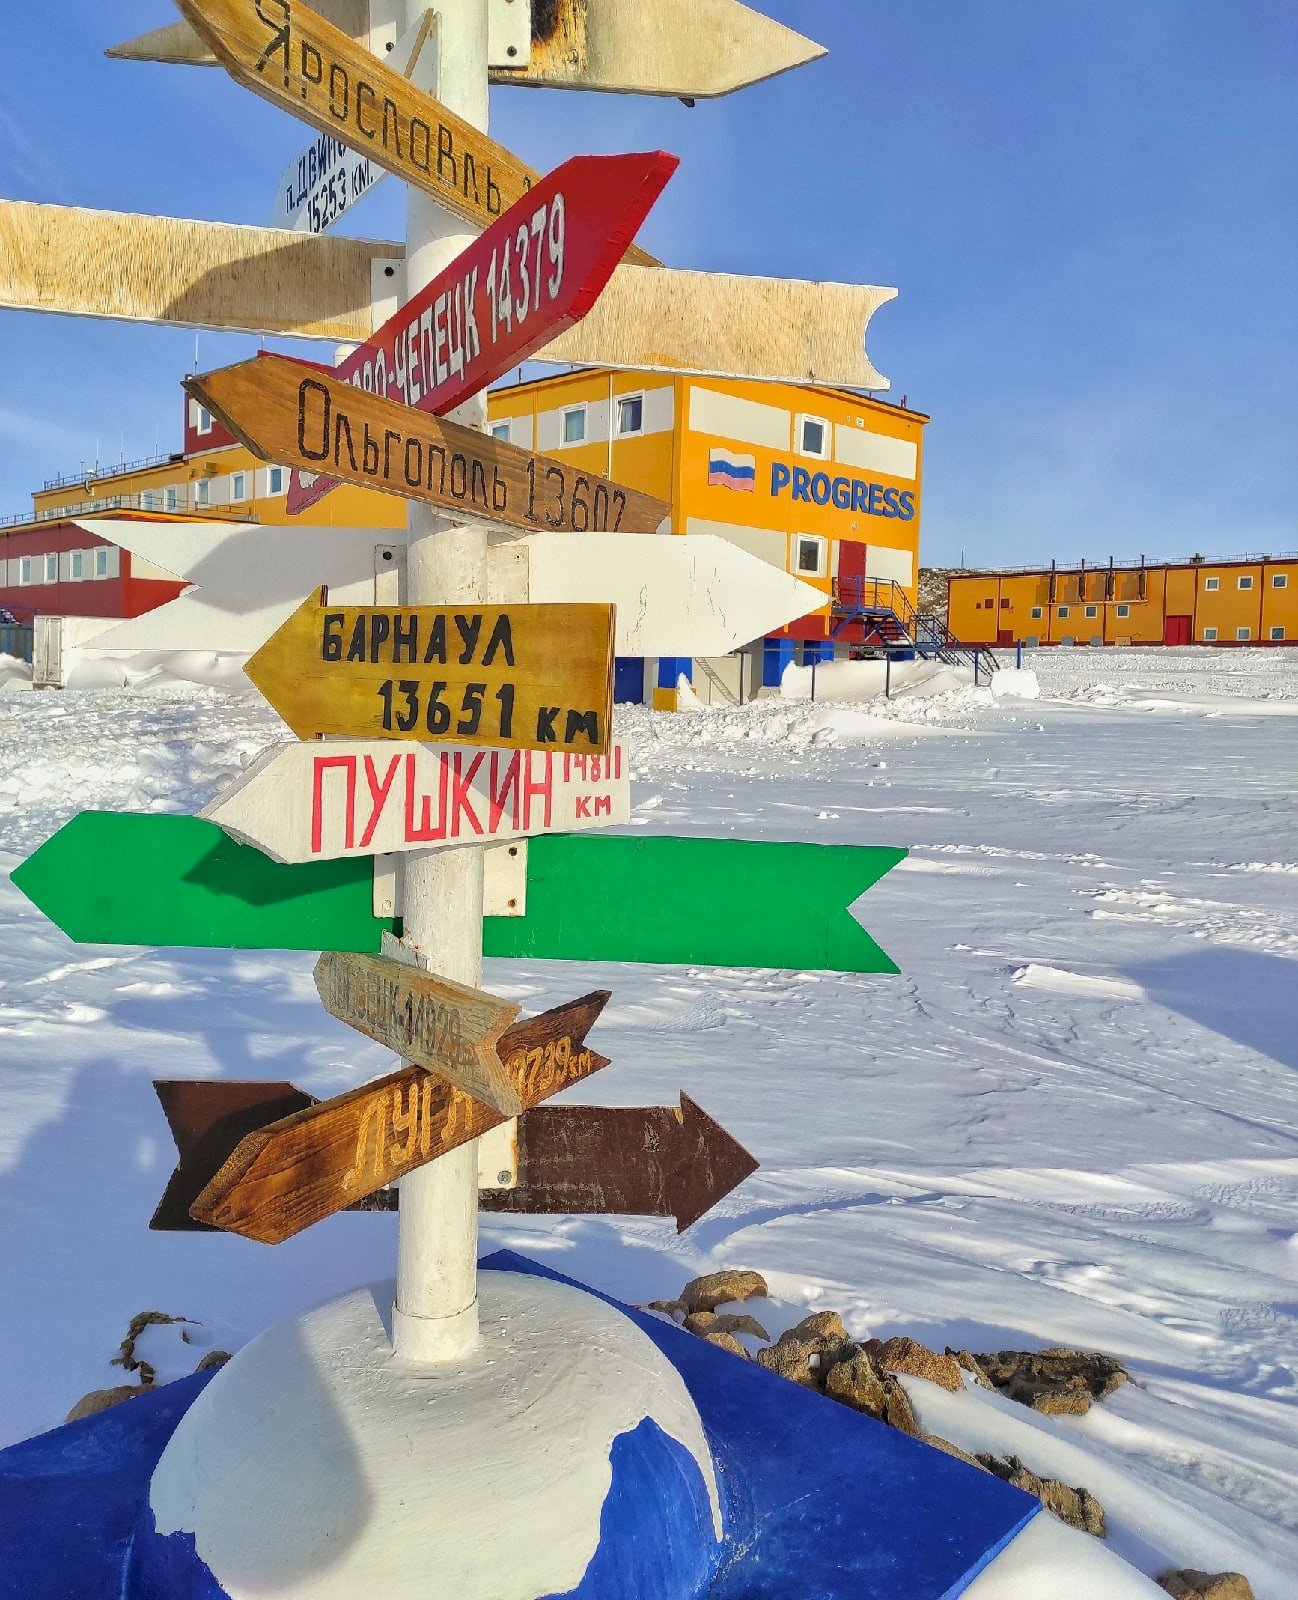  В Антарктиде к юбилею Алтайского края учёный установил указатель на Барнаул 